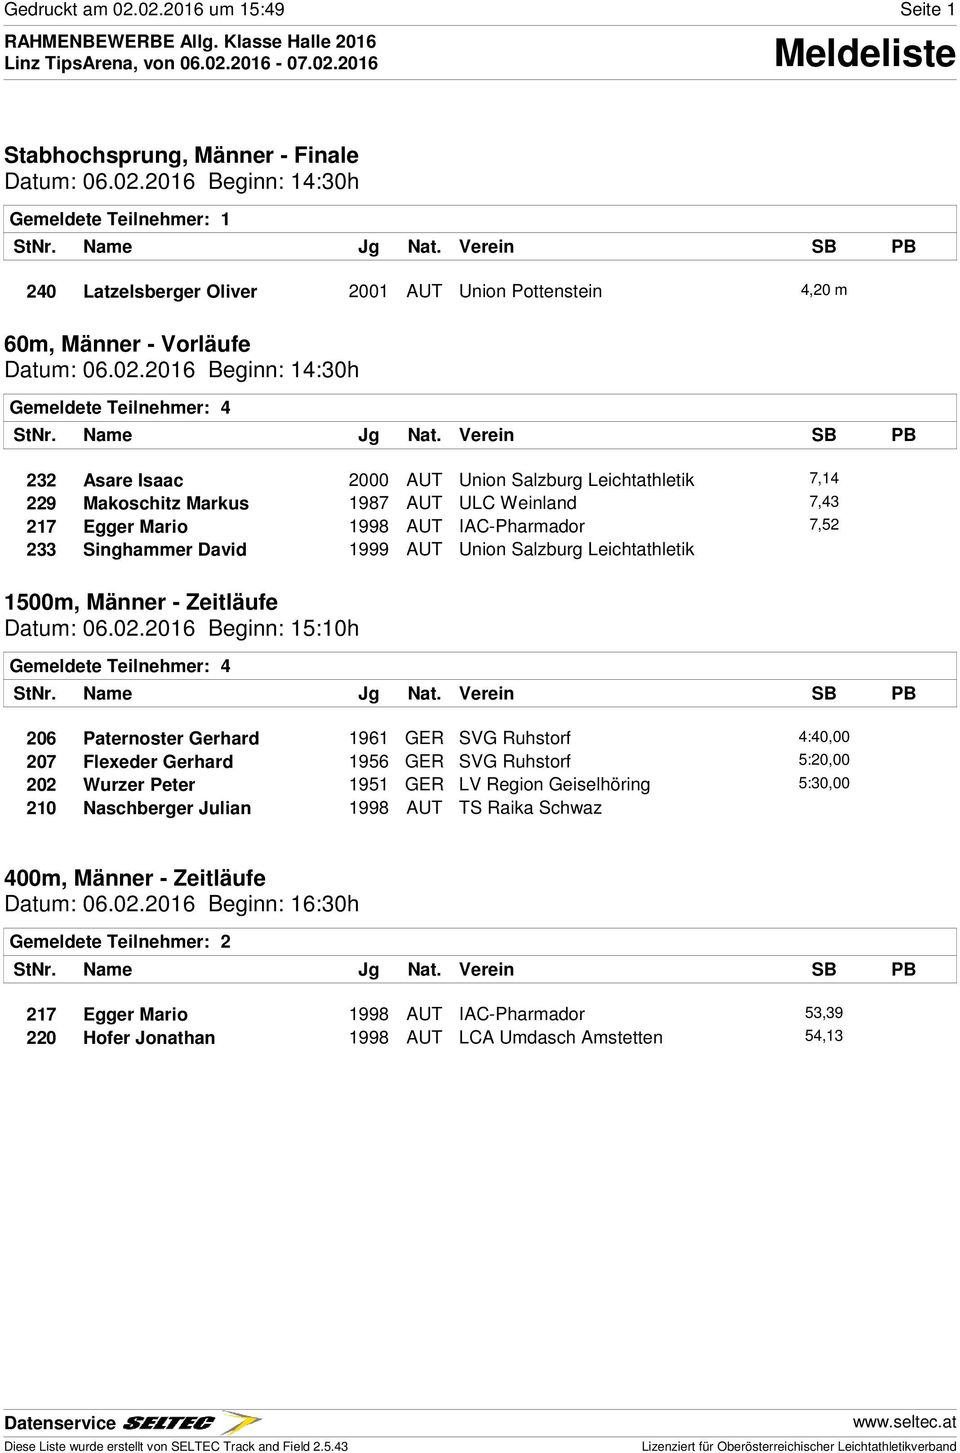 233 Singhammer David 1999 AUT Union Salzburg Leichtathletik 1500m, Männer - Zeitläufe Datum: 06.02.